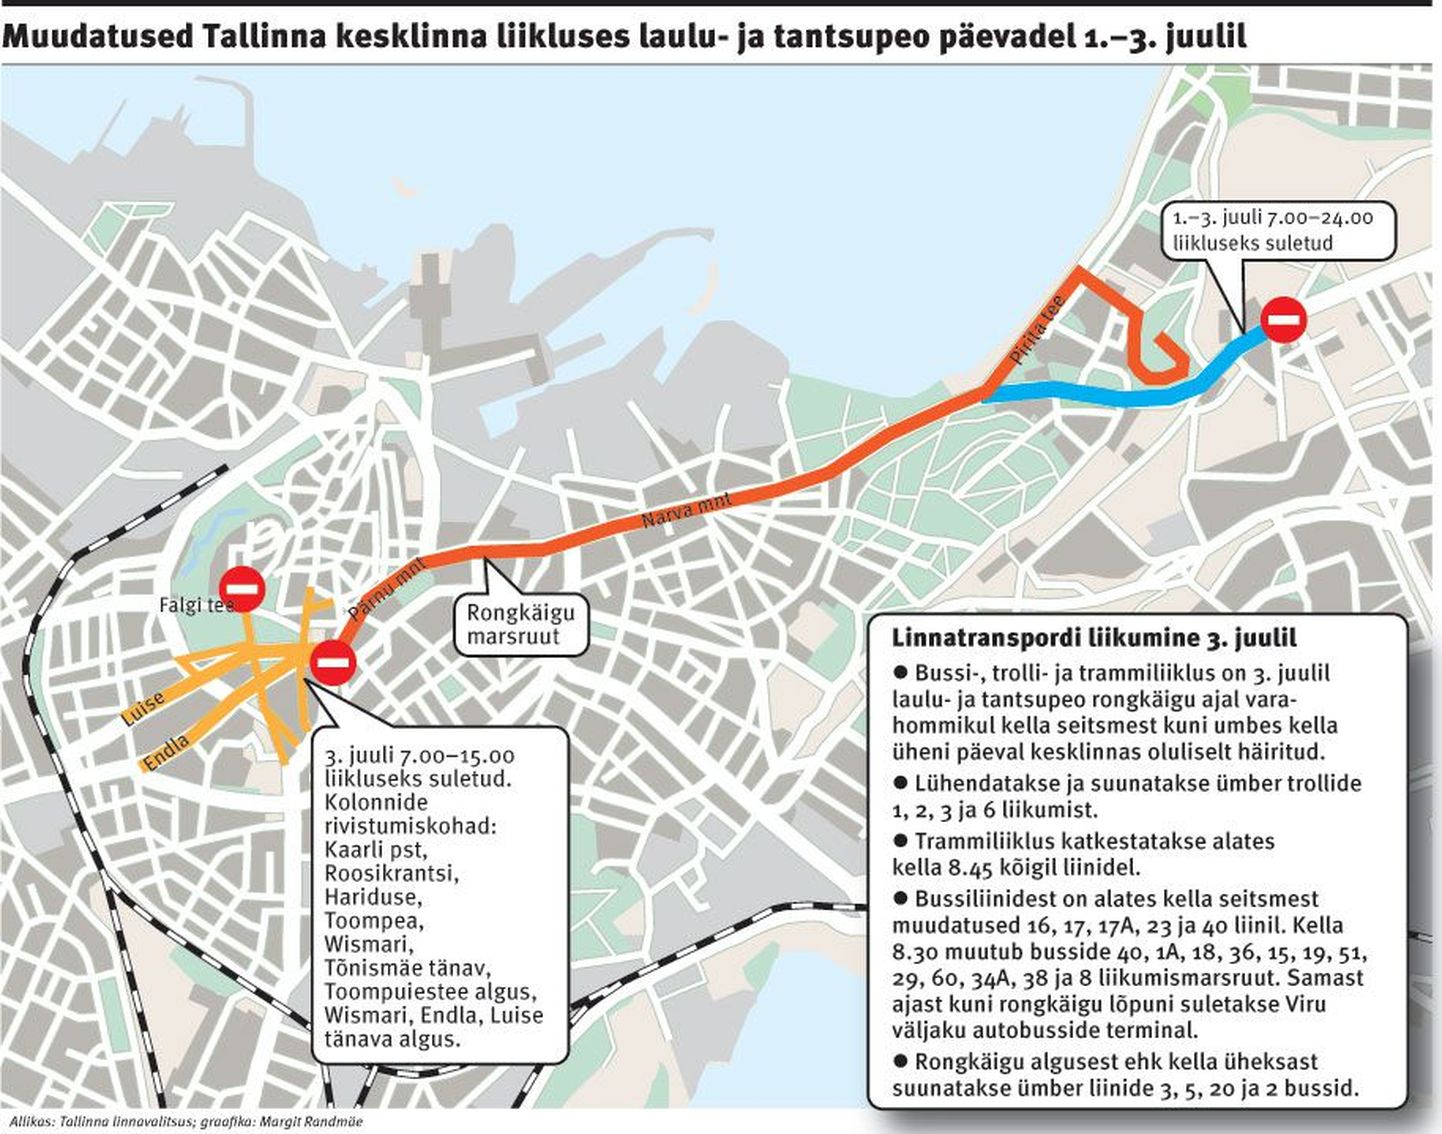 Muudatused Tallinna kesklinna liikluses laulu- ja tantsupeo päevadel 1.–3. juulil.